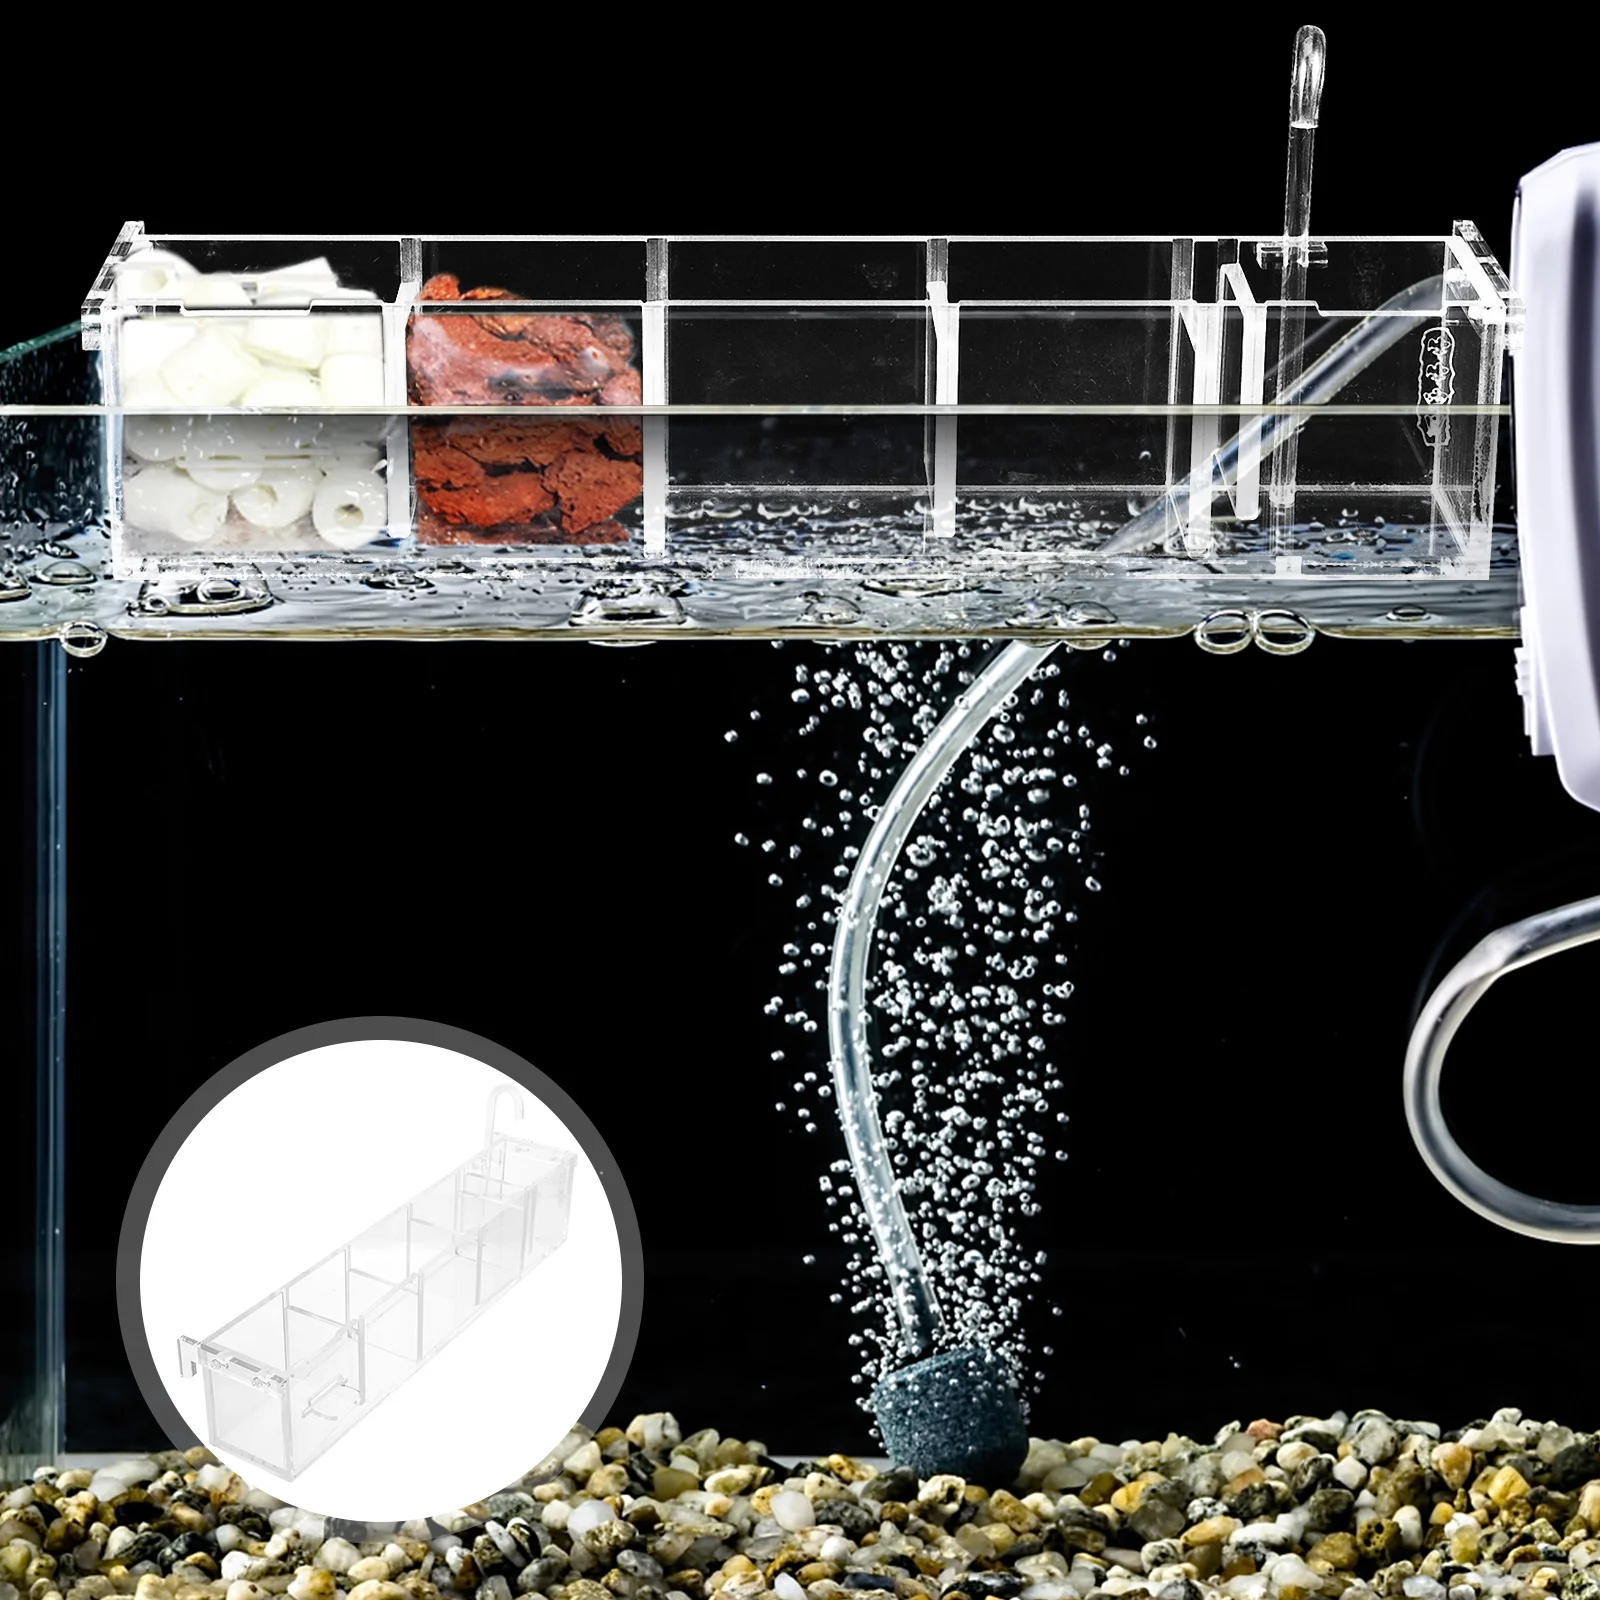 

Аквариумный фильтр фильтры принадлежности для аквариума инструмент внешний аксессуар акриловый очиститель